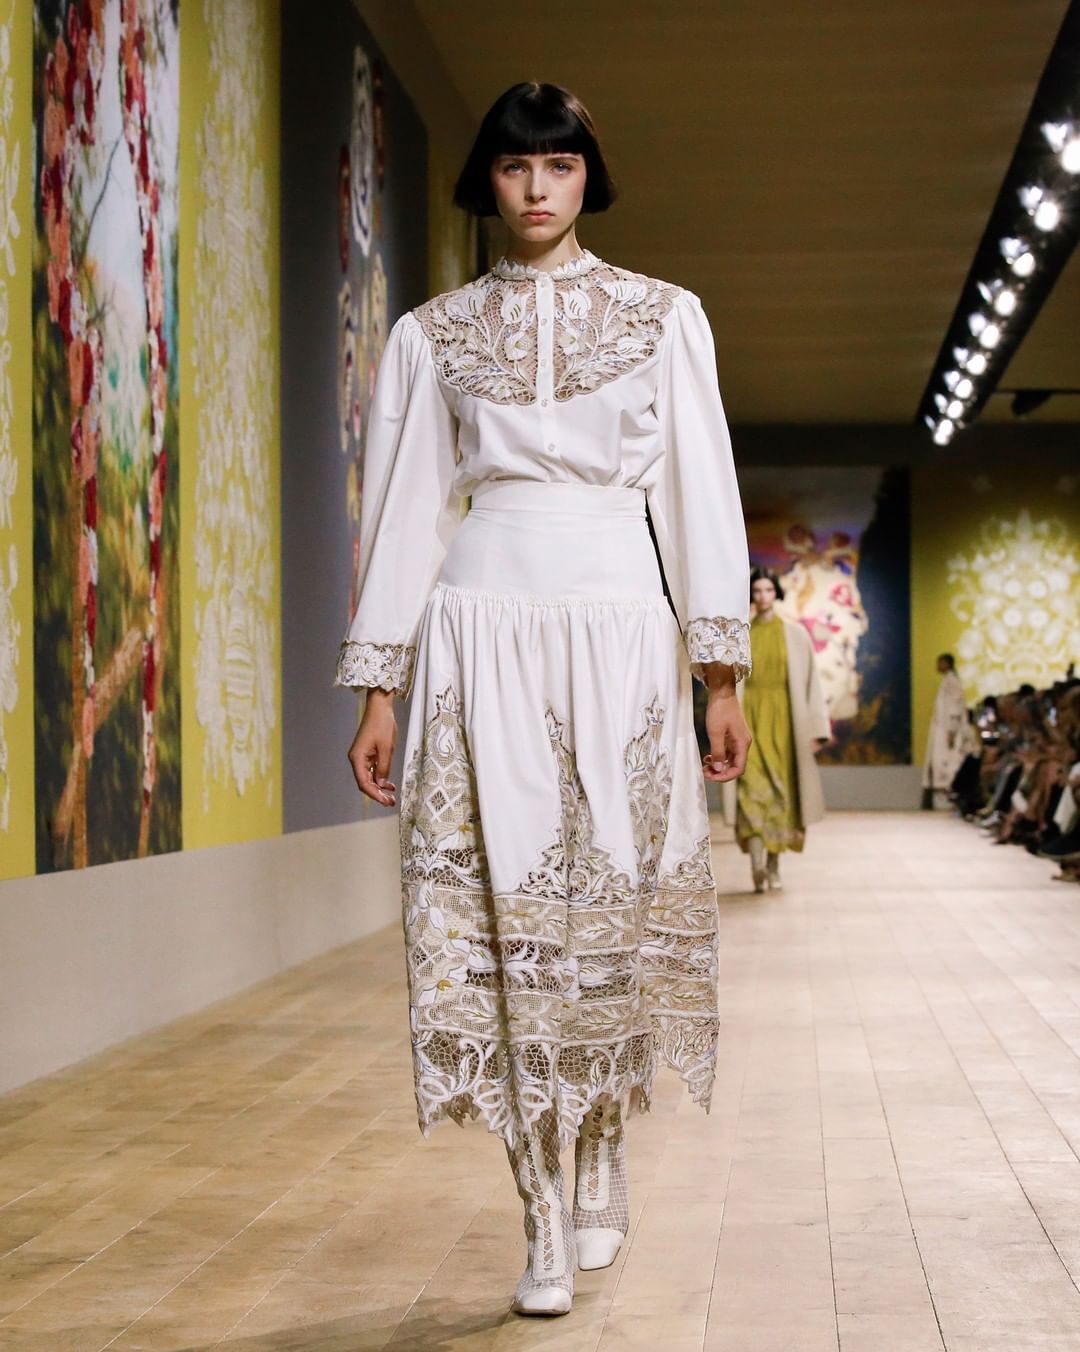 Dior использовал декорации украинской художницы для показа своей новой коллекции. Фото и видео